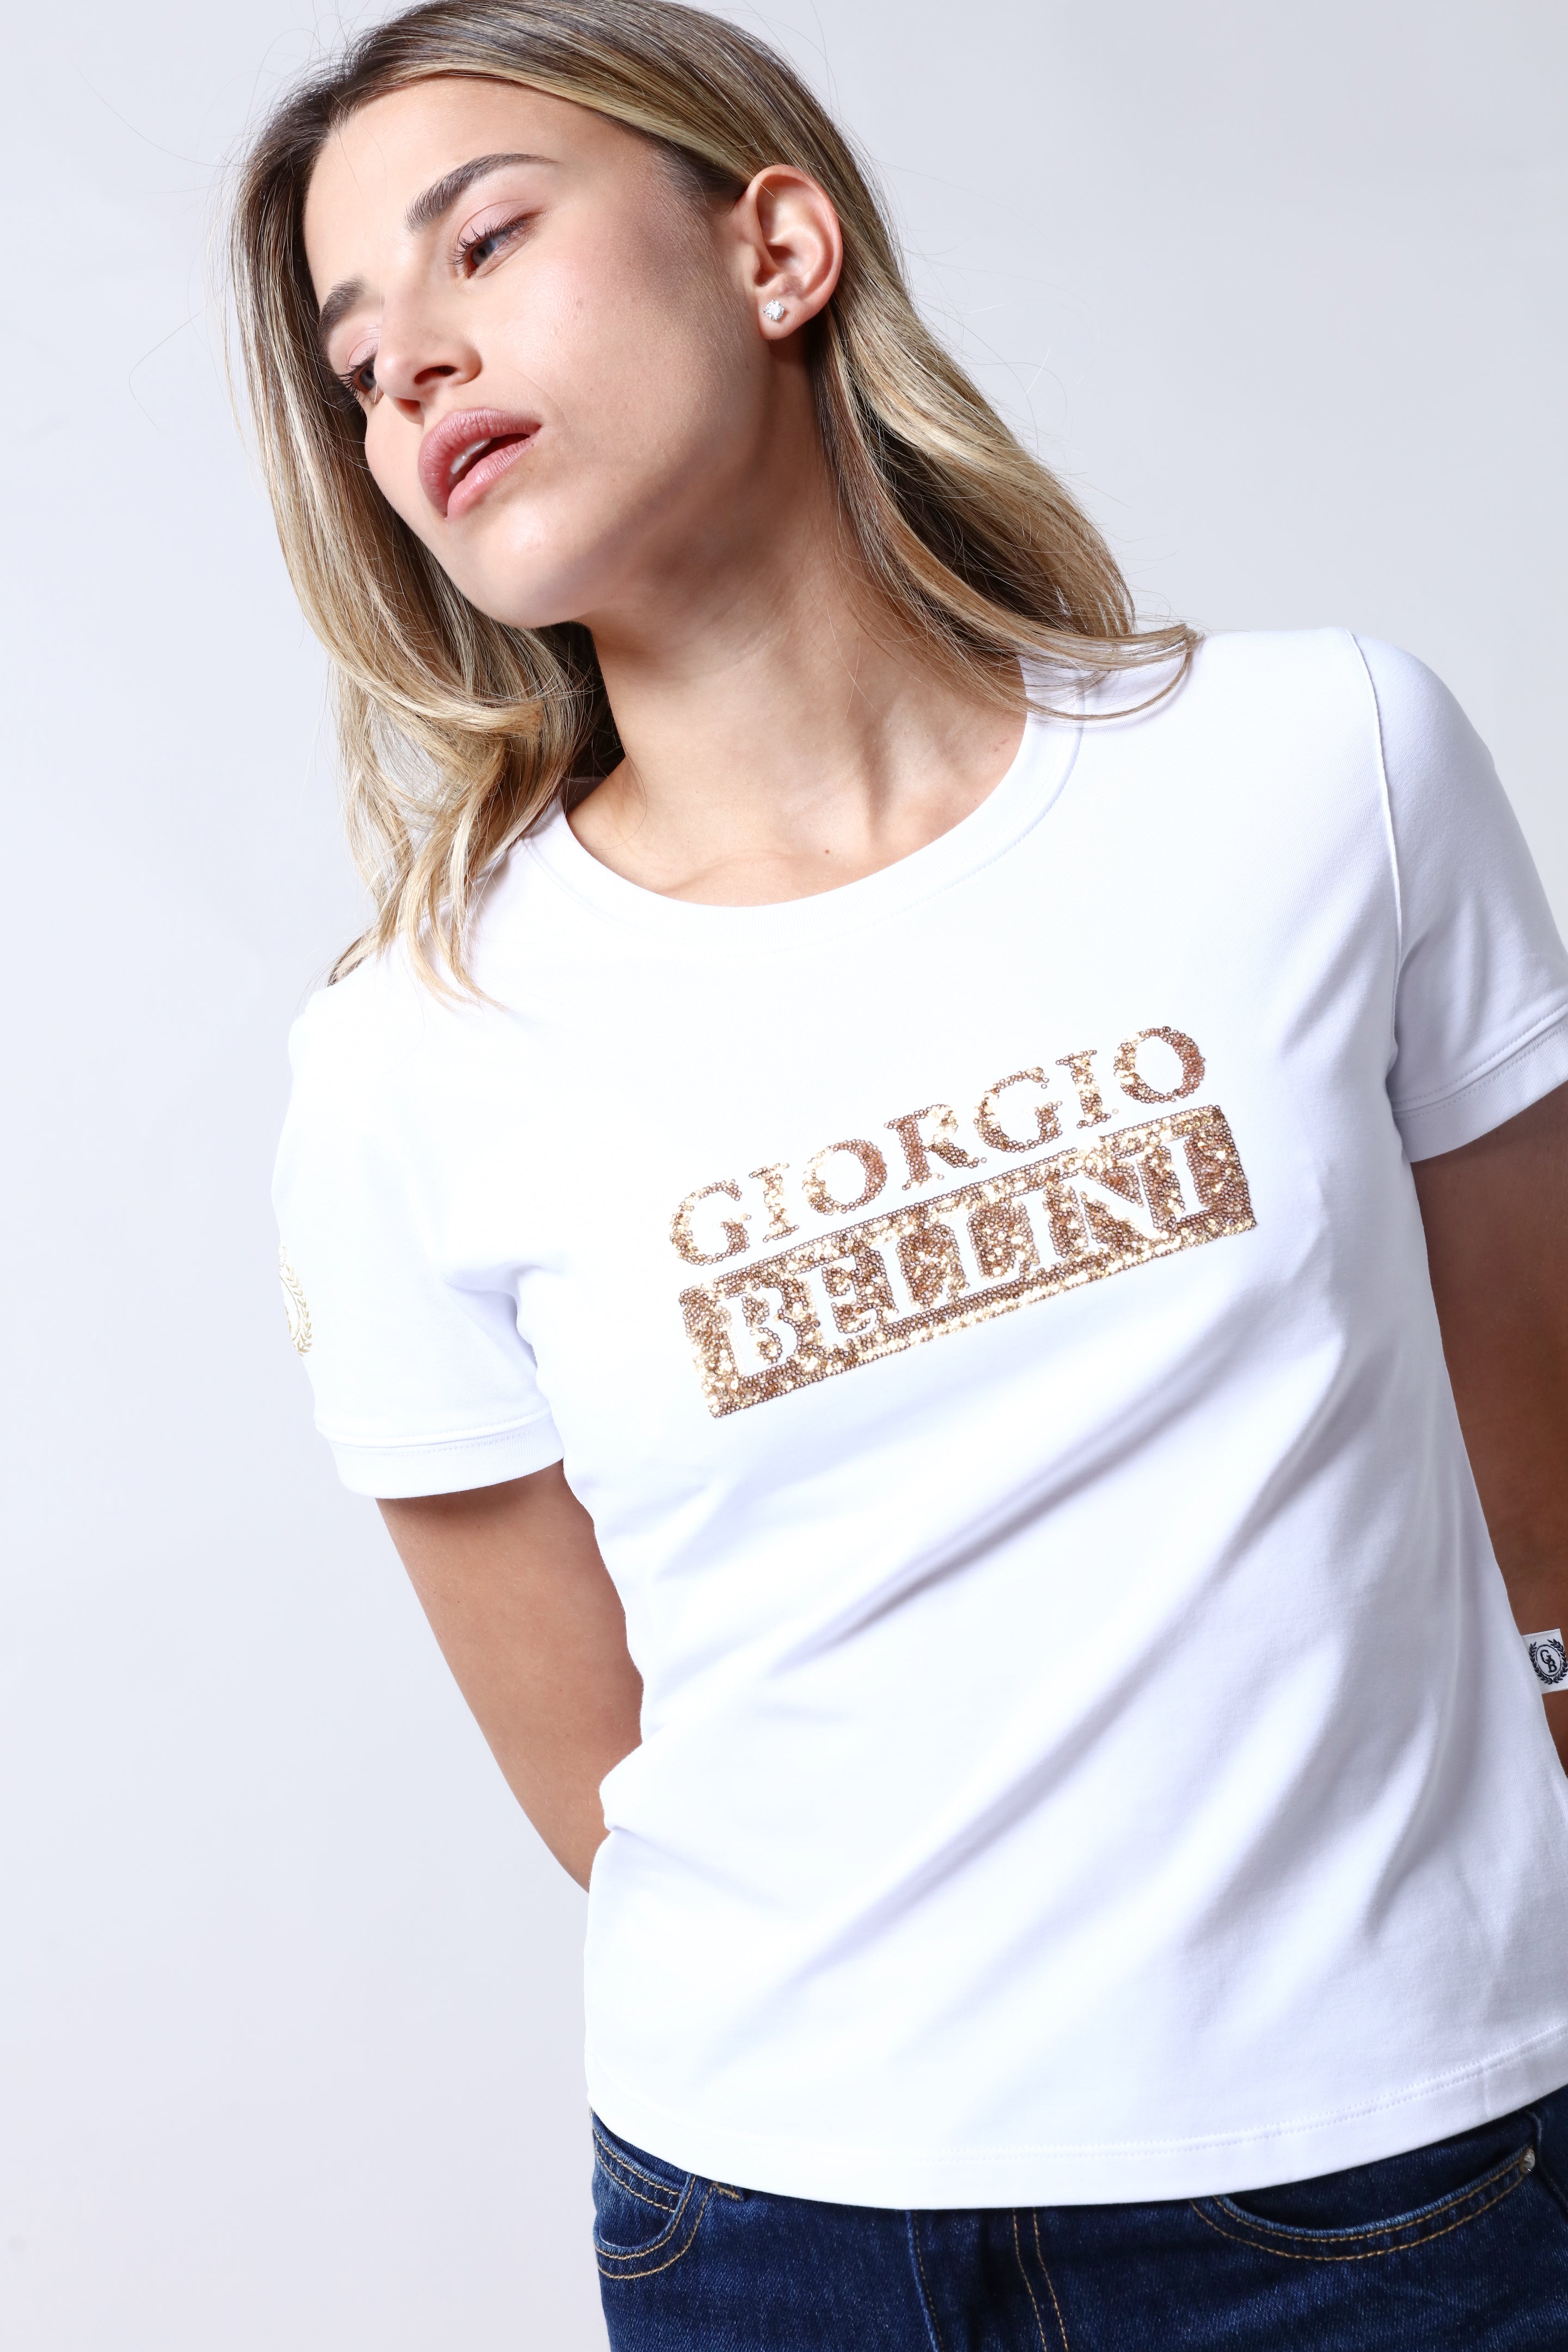 חולצת טי שירט GIORGIO BELLINI בצבע לבן לנשים